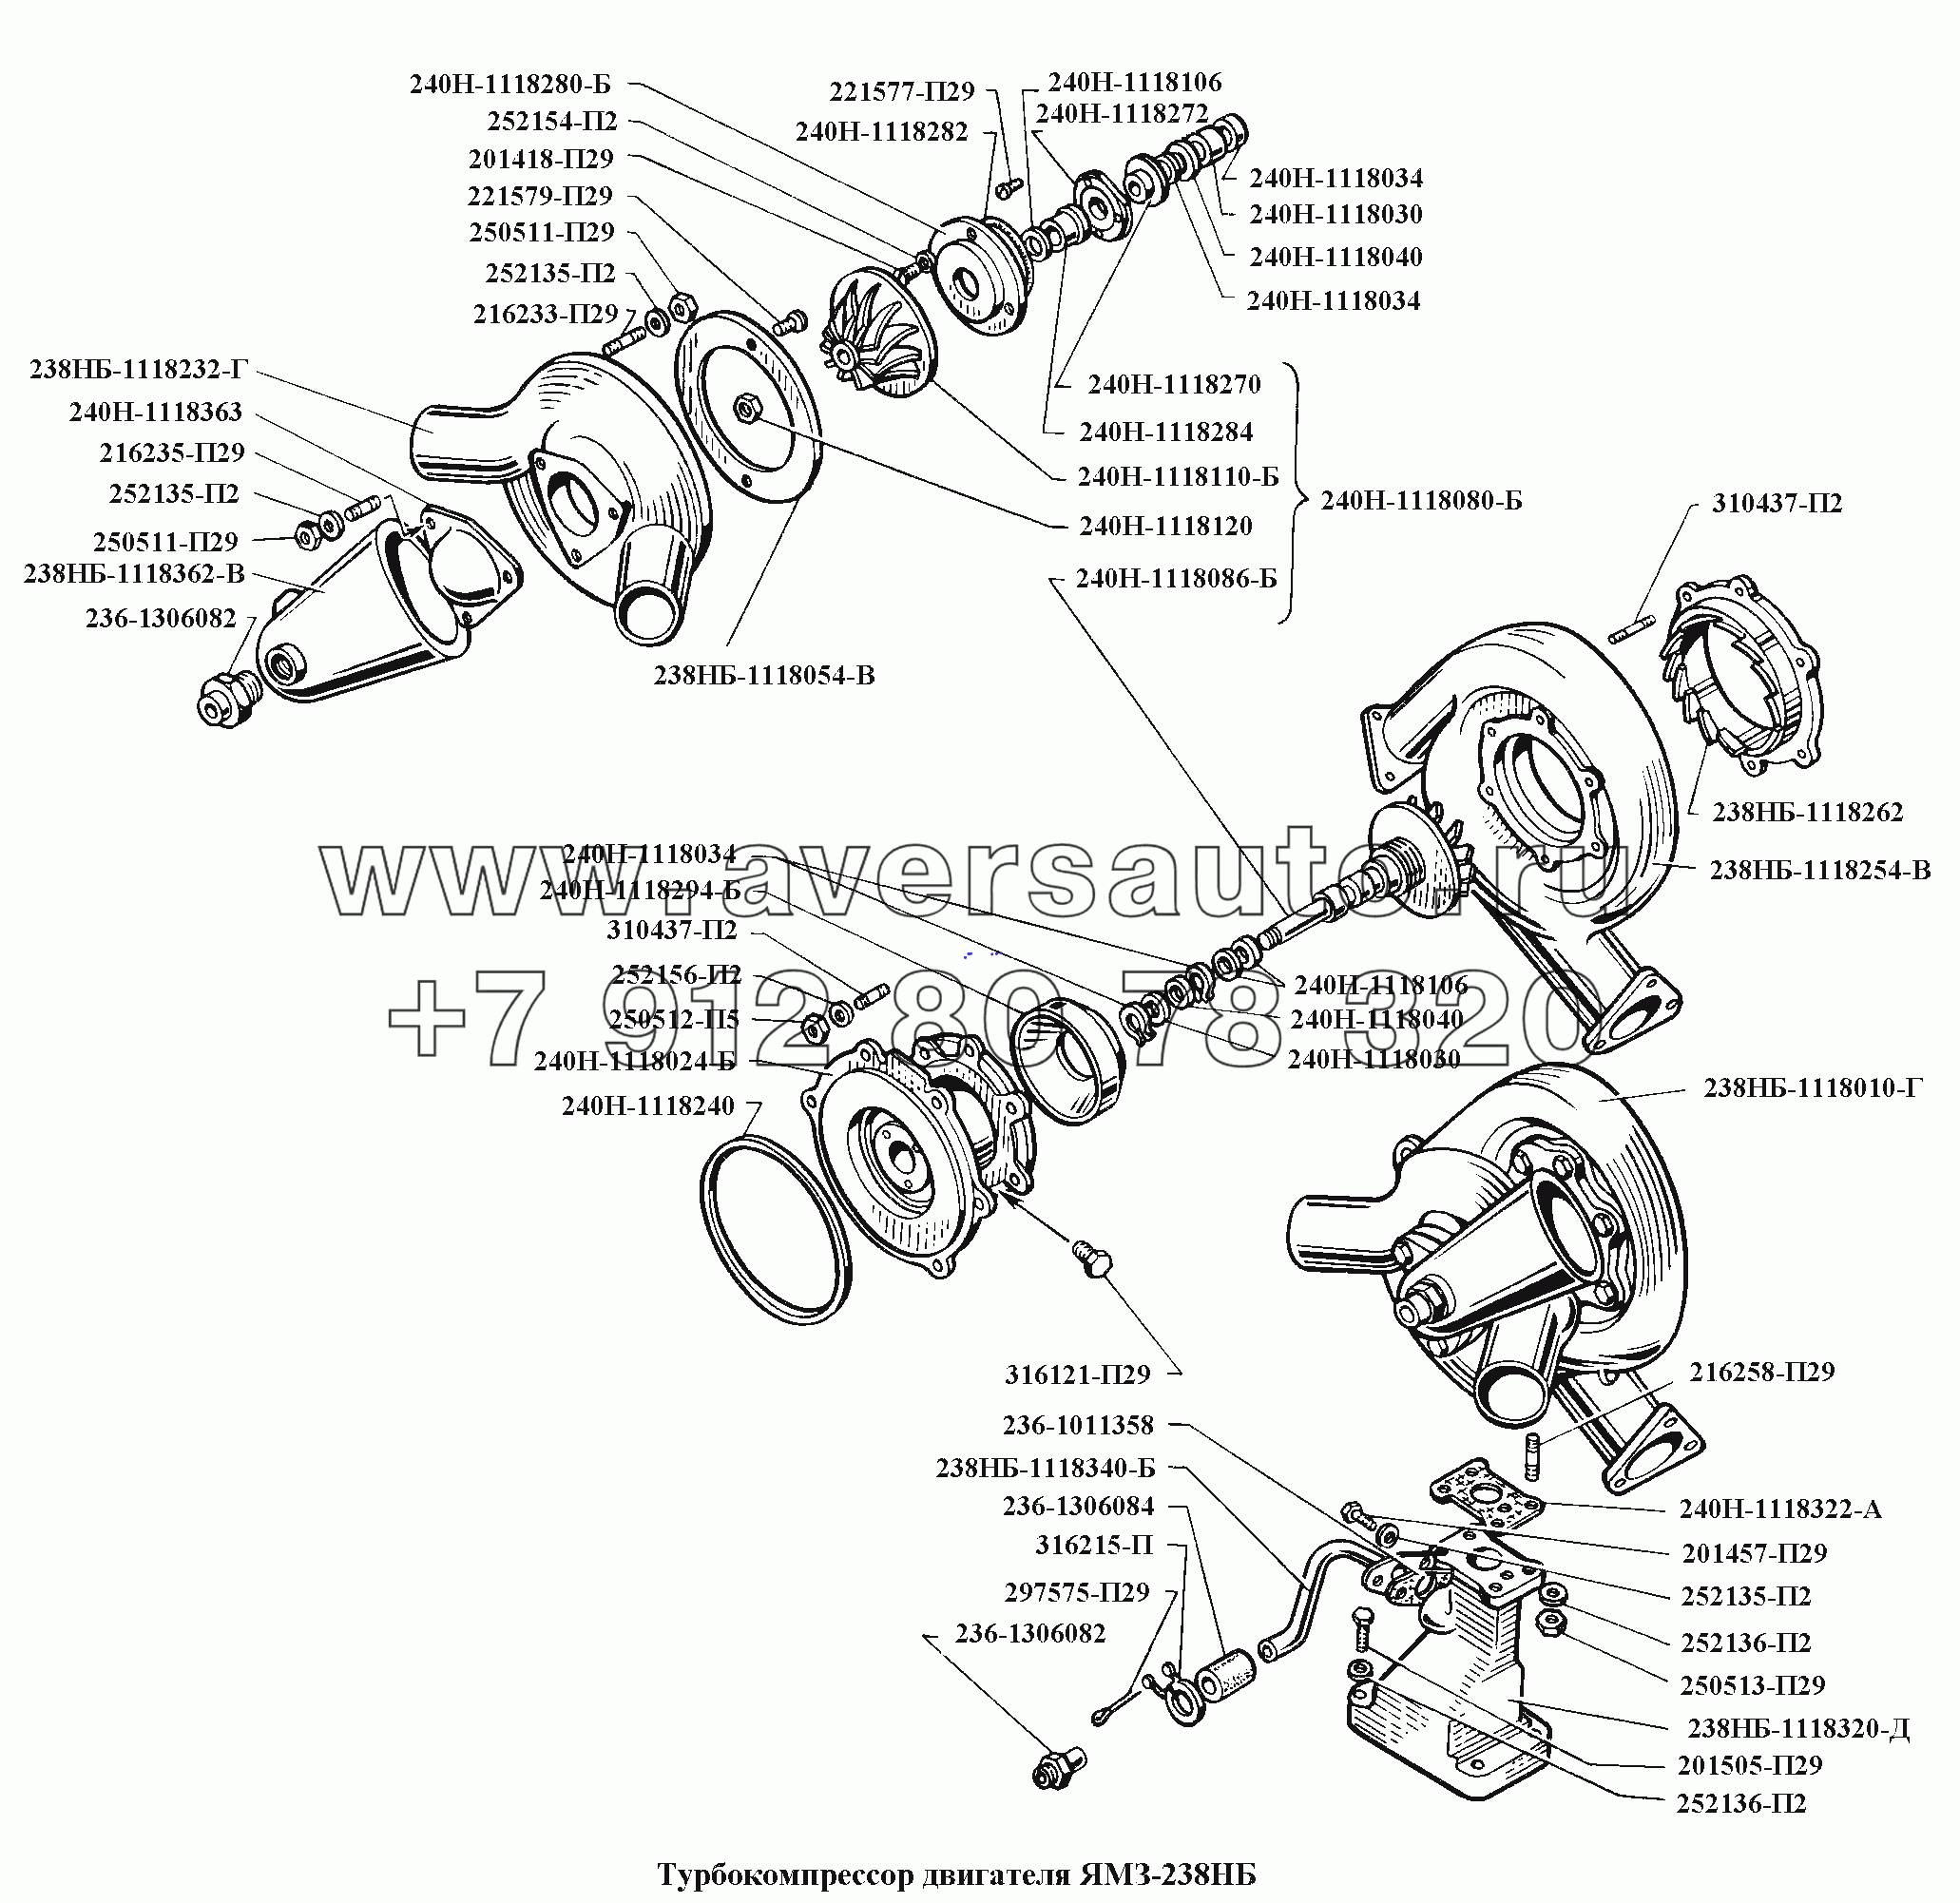 Турбокомпрессор двигателя ЯМЗ-238НБ